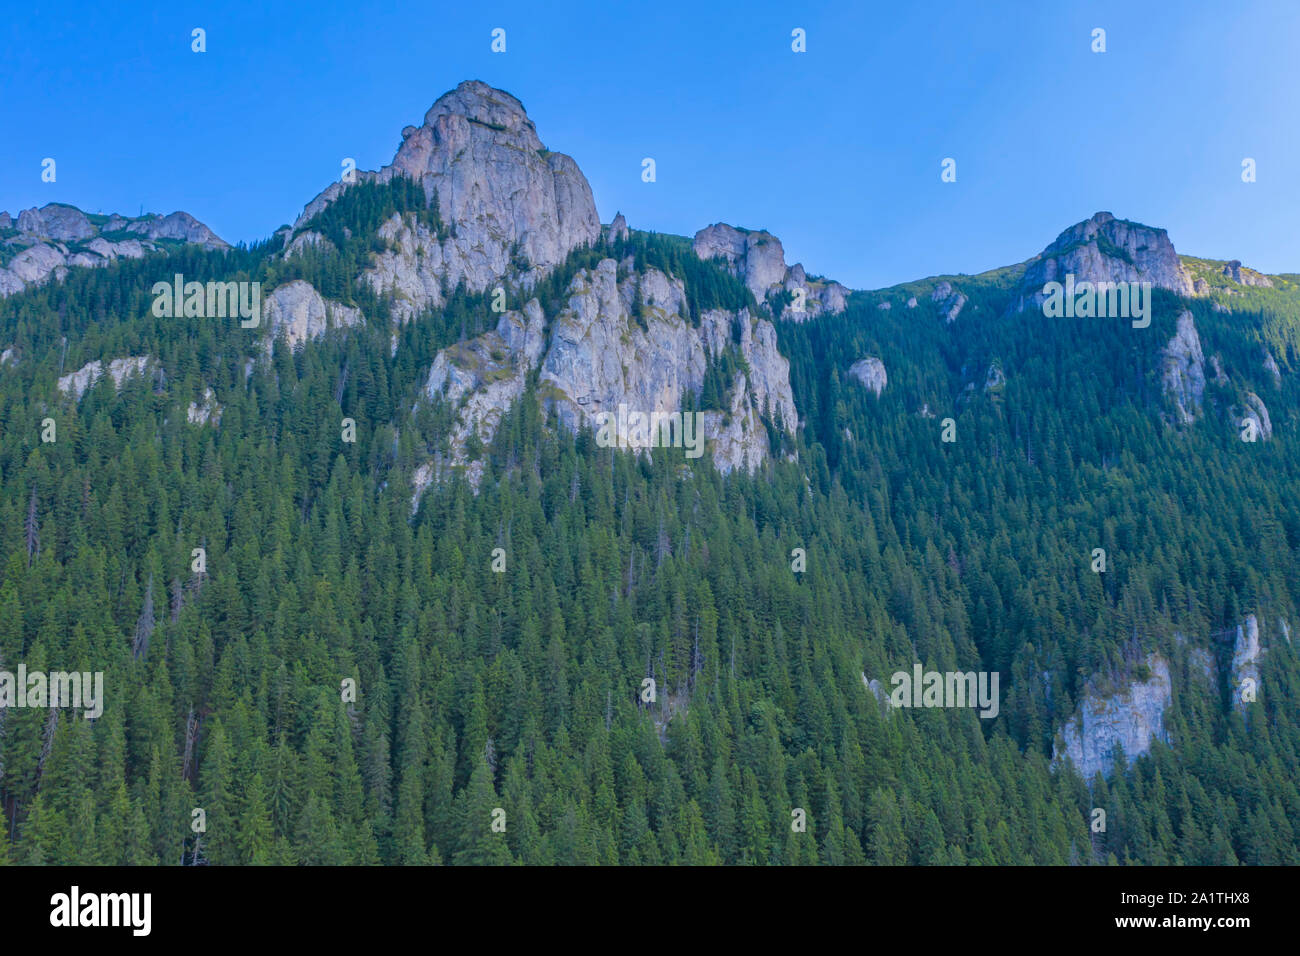 Les roches de la forêt verte d'été, scène de montagne Banque D'Images